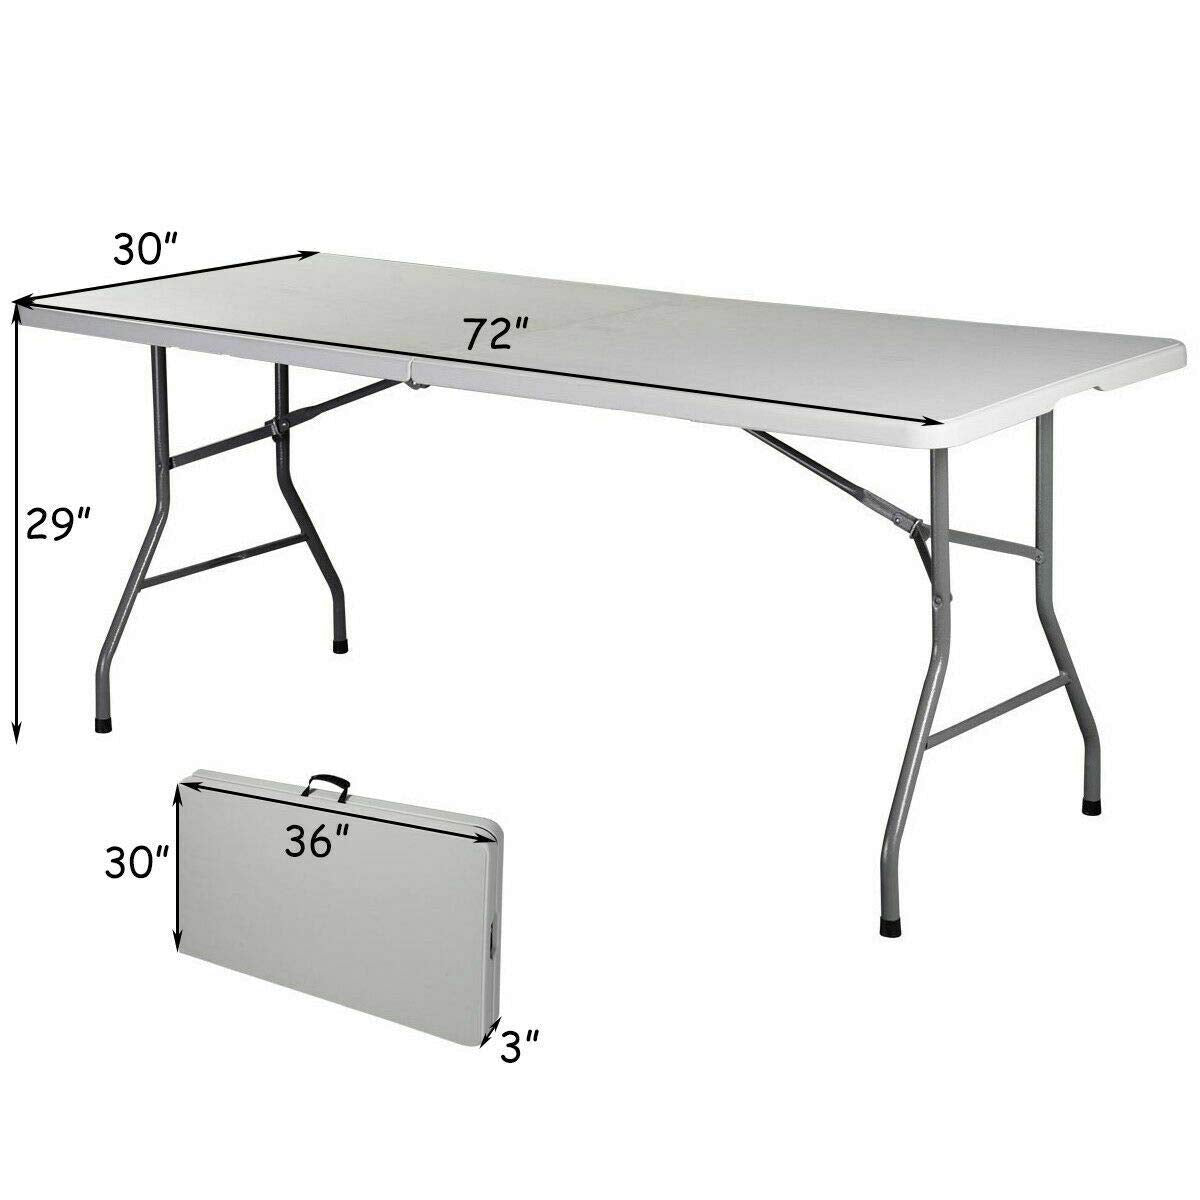 Giantex Folding Table, Off White